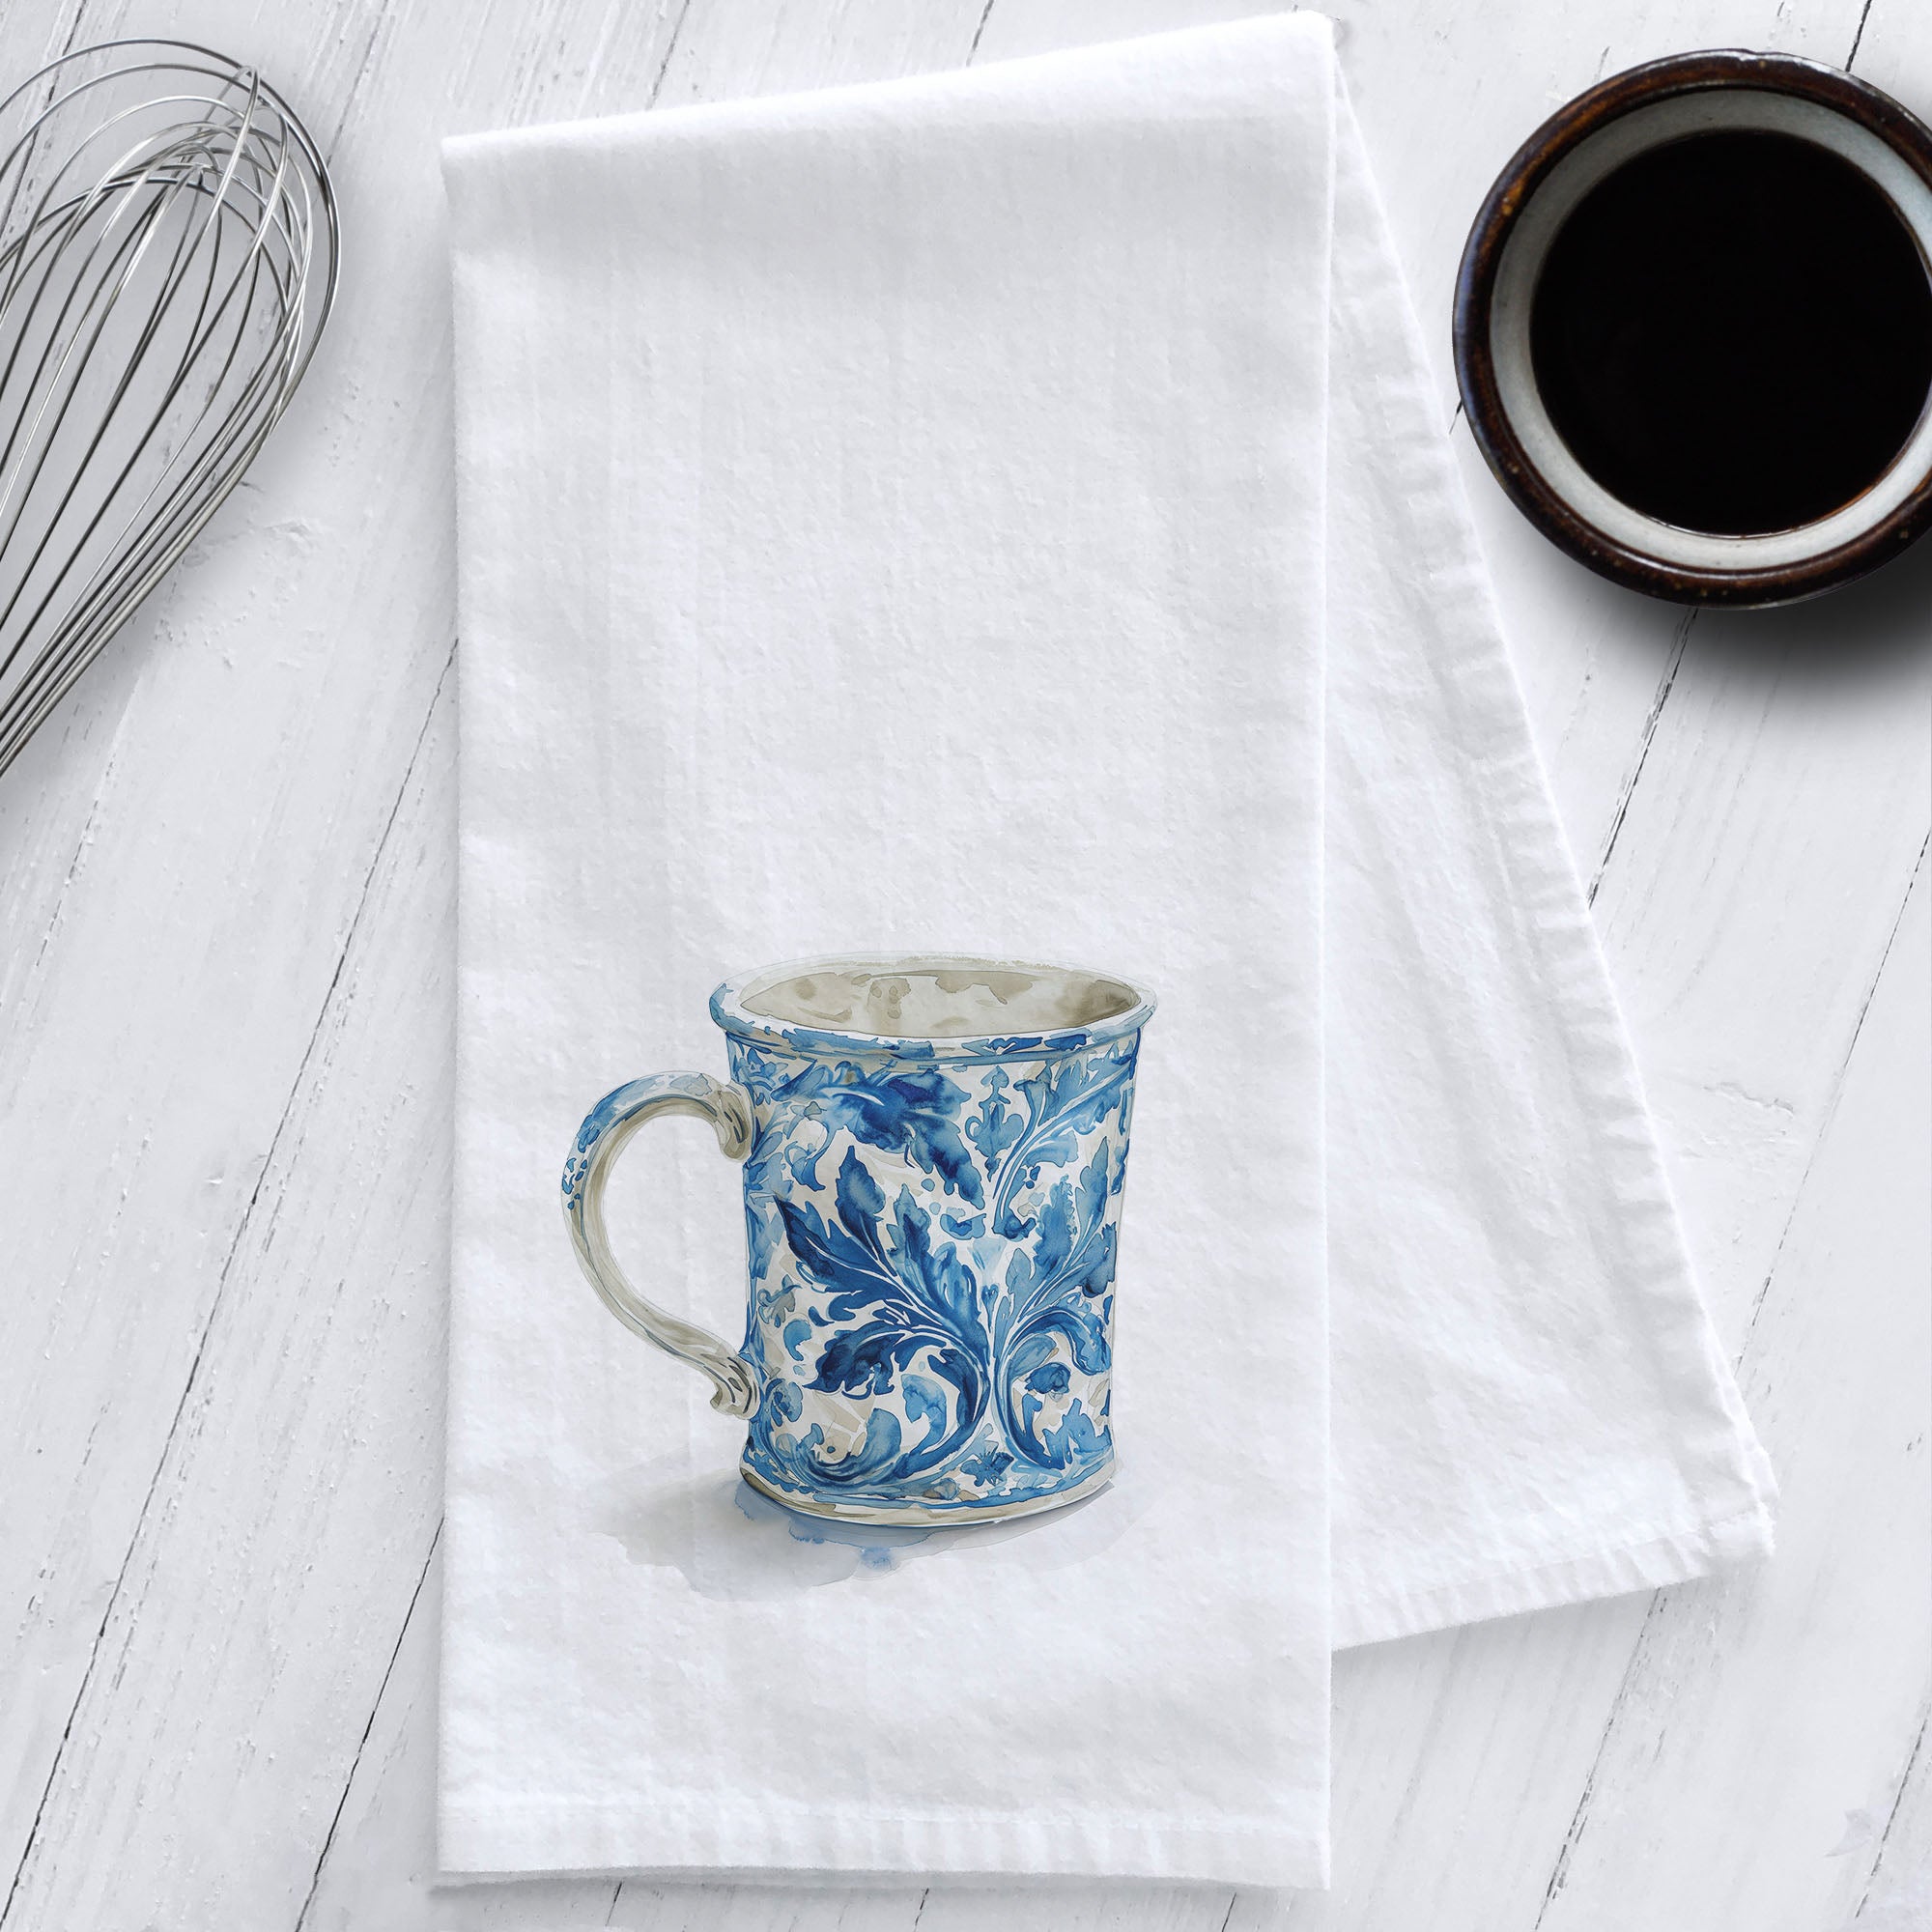 Chinoiserie Blue and White Coffee Mug Tea Towel